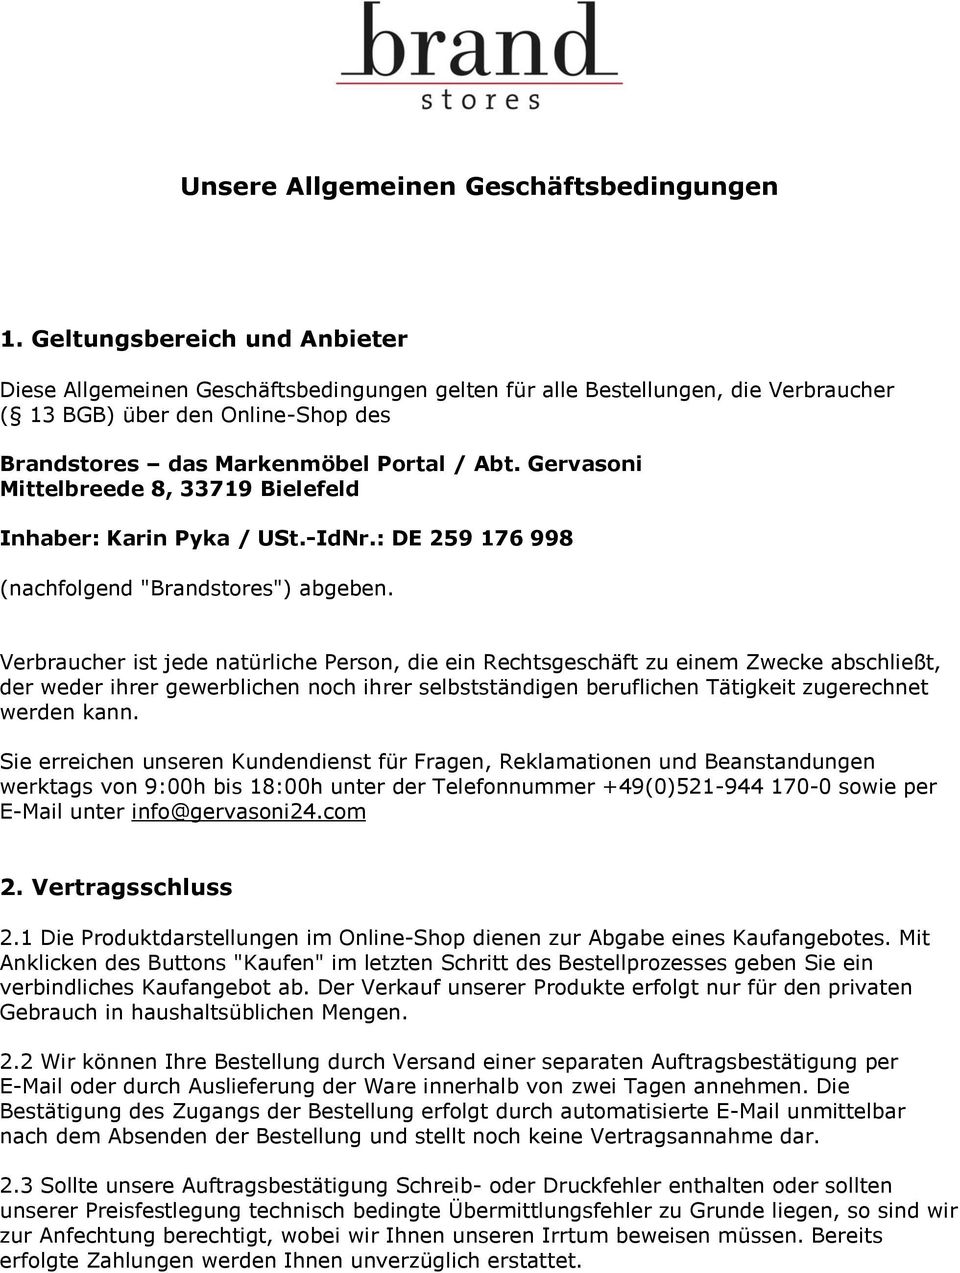 Gervasoni Mittelbreede 8, 33719 Bielefeld Inhaber: Karin Pyka / USt.-IdNr.: DE 259 176 998 (nachfolgend "Brandstores") abgeben.